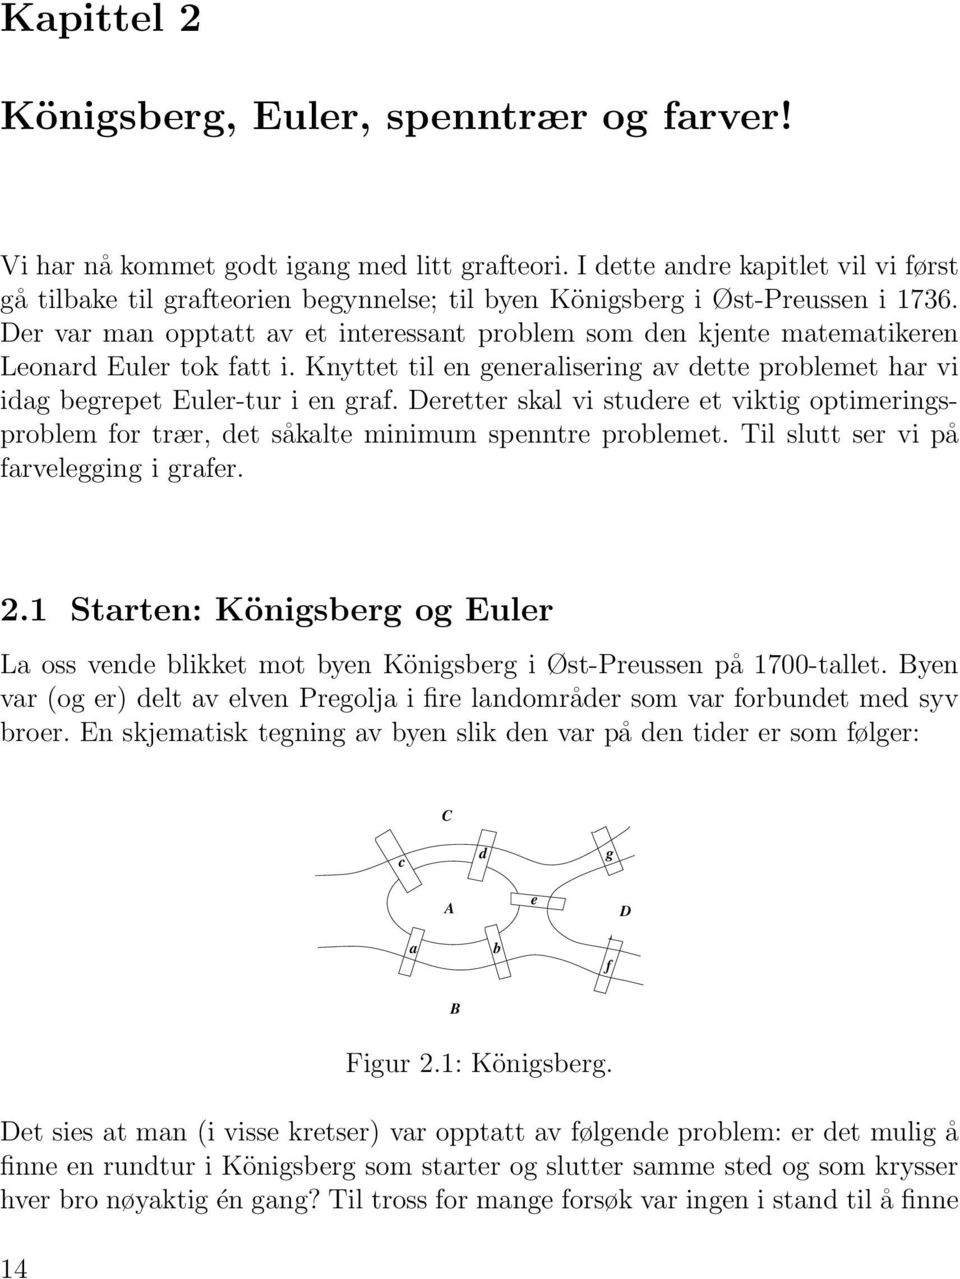 Der var man opptatt av et interessant problem som den kjente matematikeren Leonard Euler tok fatt i. Knyttet til en generalisering av dette problemet har vi idag begrepet Euler-tur i en graf.